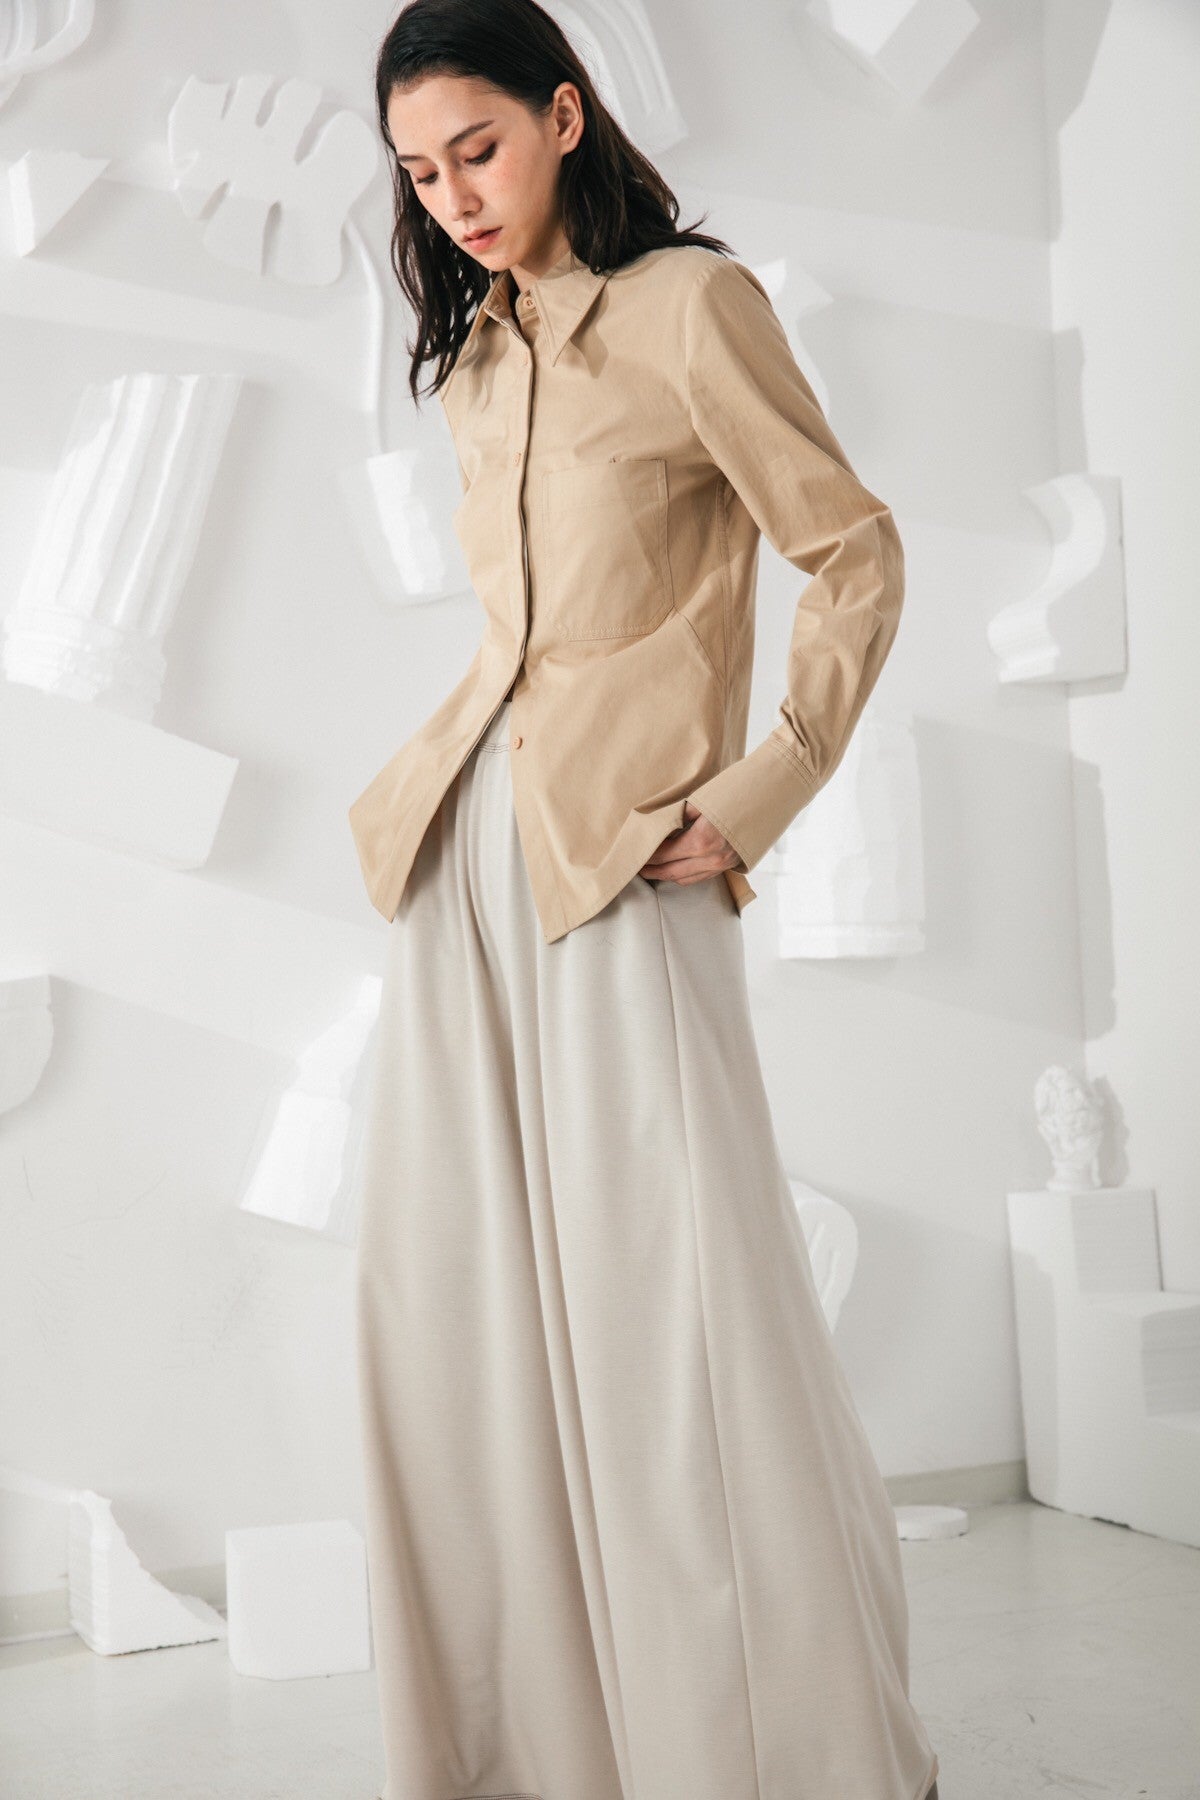 SKYE San Francisco SF shop ethical modern minimalist quality women clothing fashion Audrey Shirt beige 3